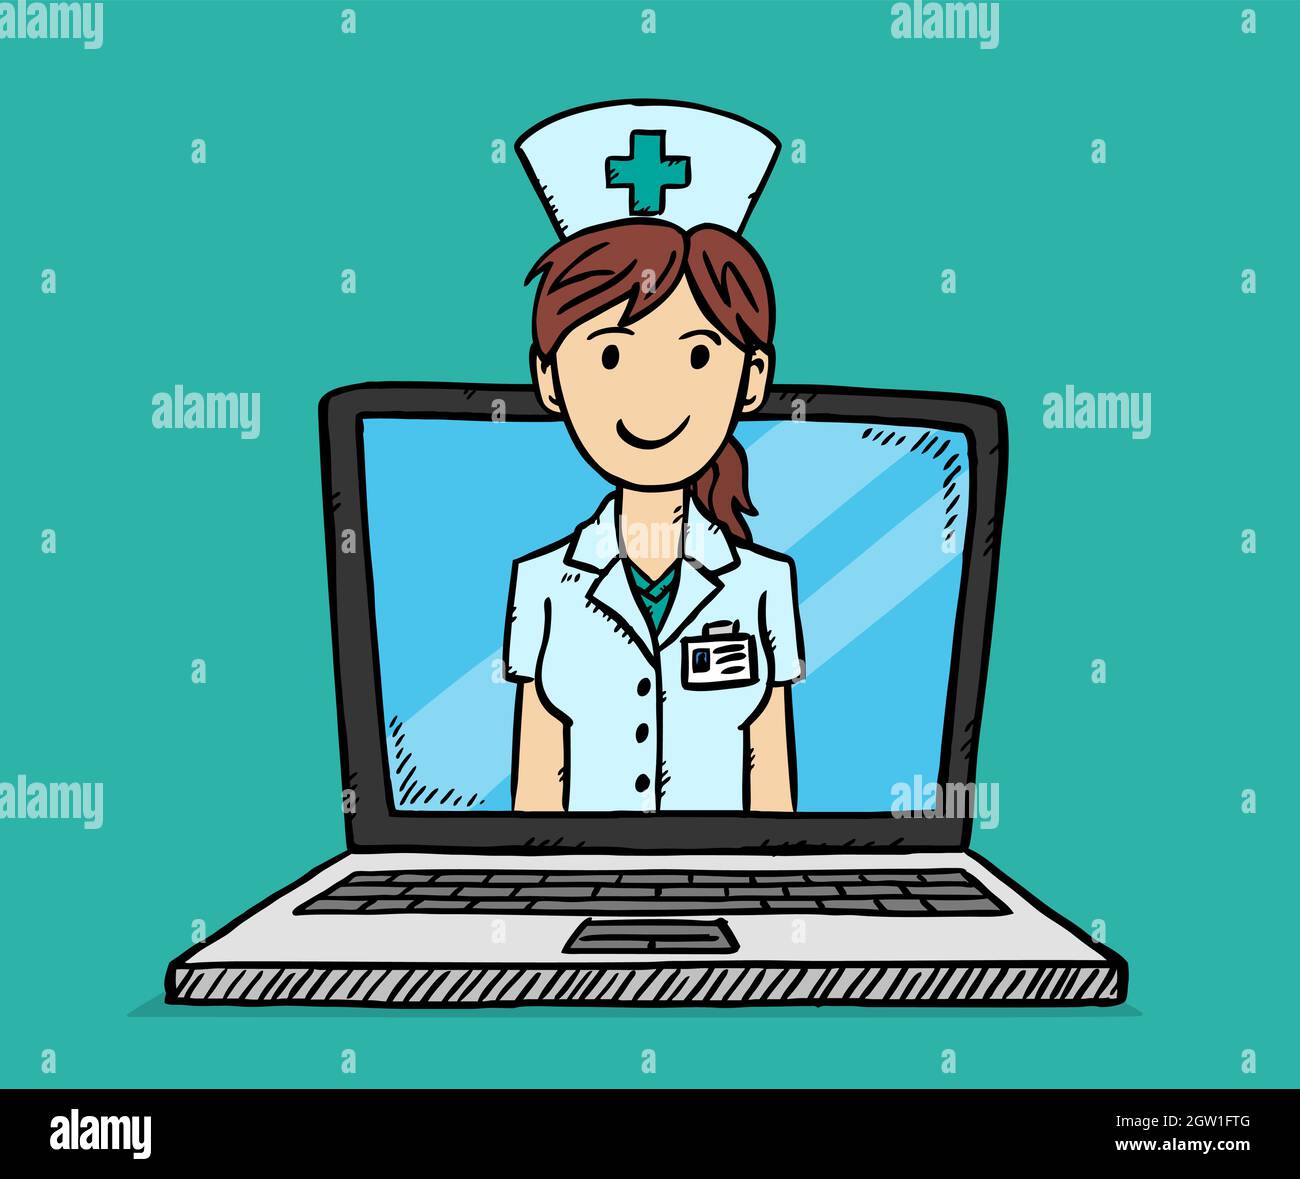 Vecteur de style caricature de consultation médicale en ligne. Dessin style coloré Doodle illustration de femme souriante infirmière sur l'écran d'ordinateur portable. Illustration de Vecteur